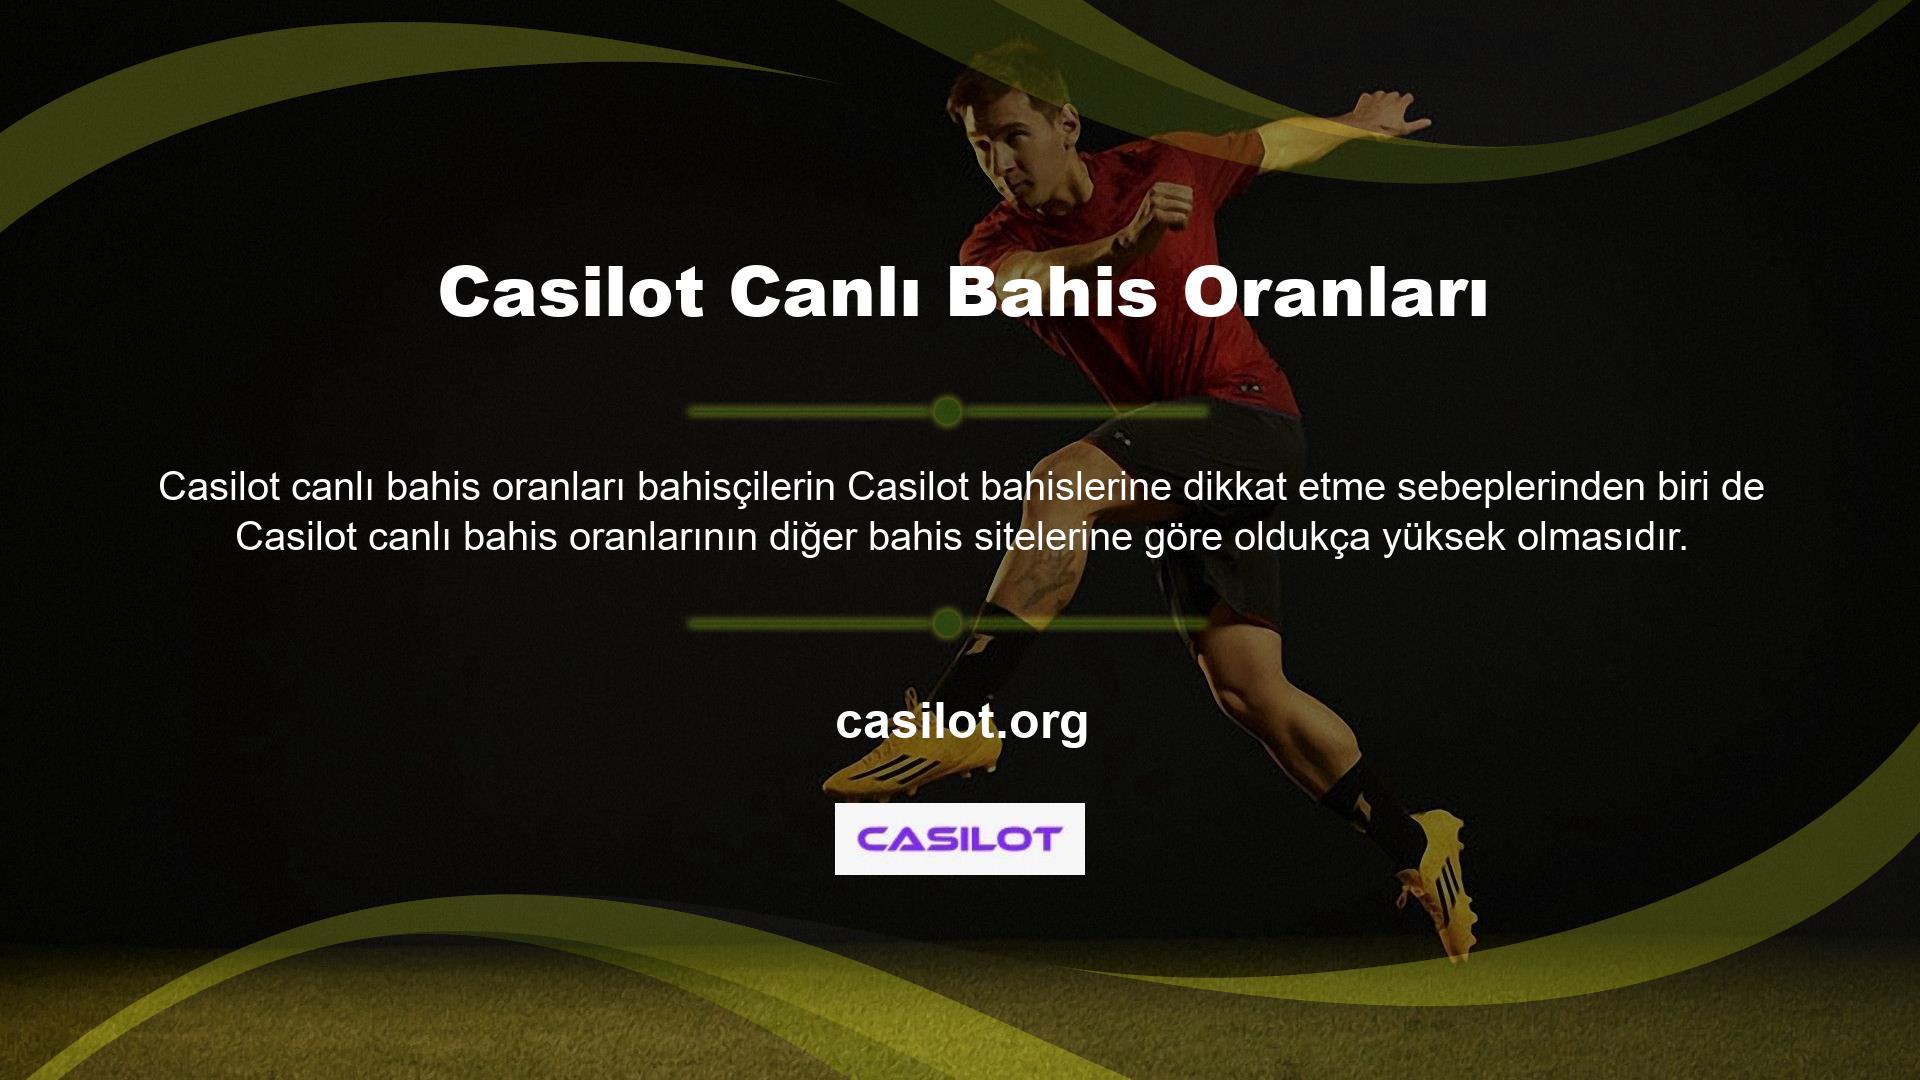 Casilot Bahis üyelik işlemini tamamlayan kullanıcılar, Casilot Canlı Bahis'in yüksek faiz oranlarından faydalanabilmektedir